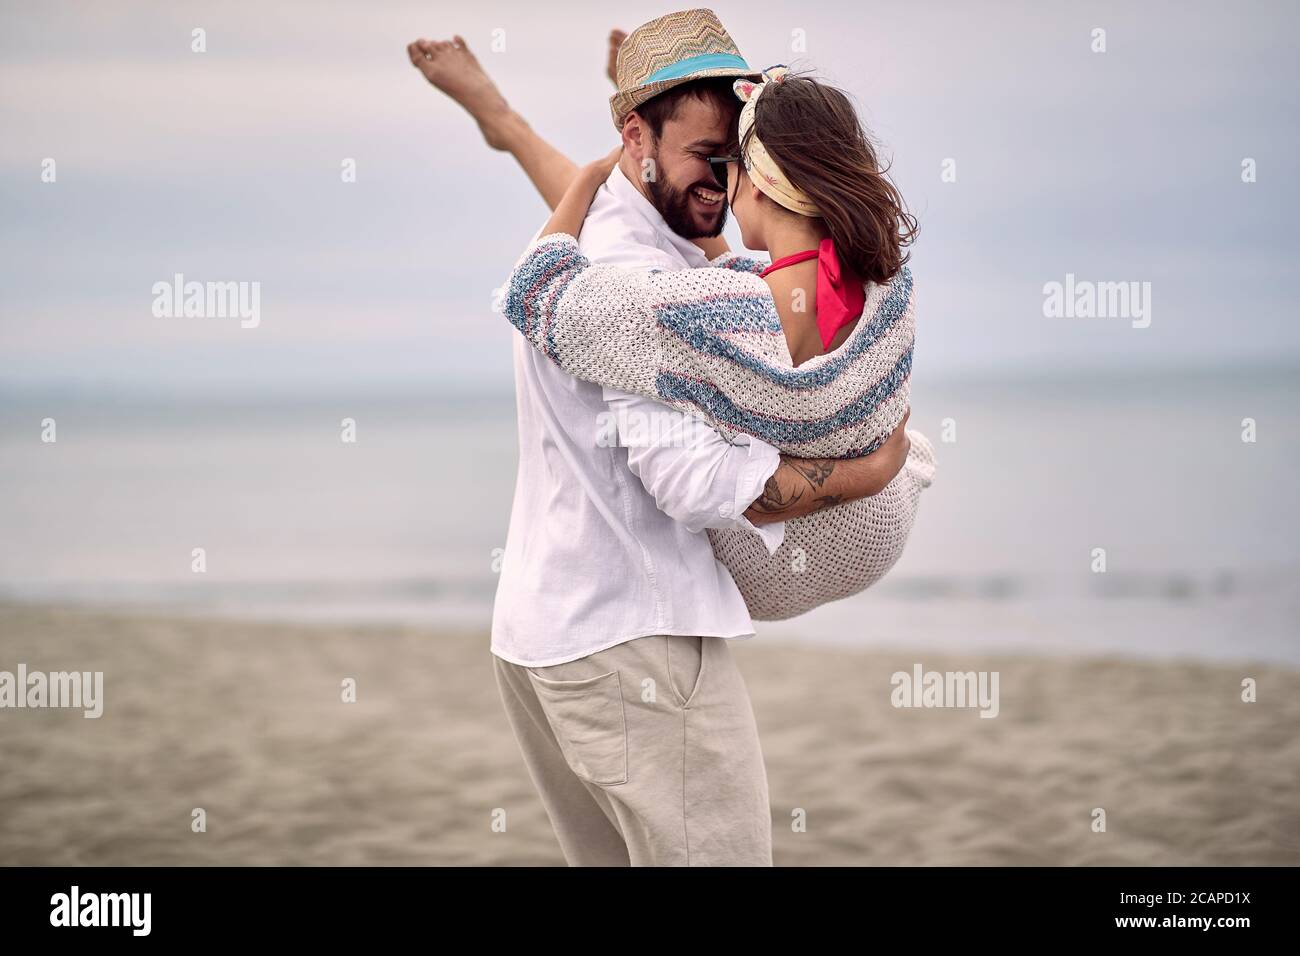 un gars de barbe caucasien portant sa petite amie dans ses bras à la plage Banque D'Images